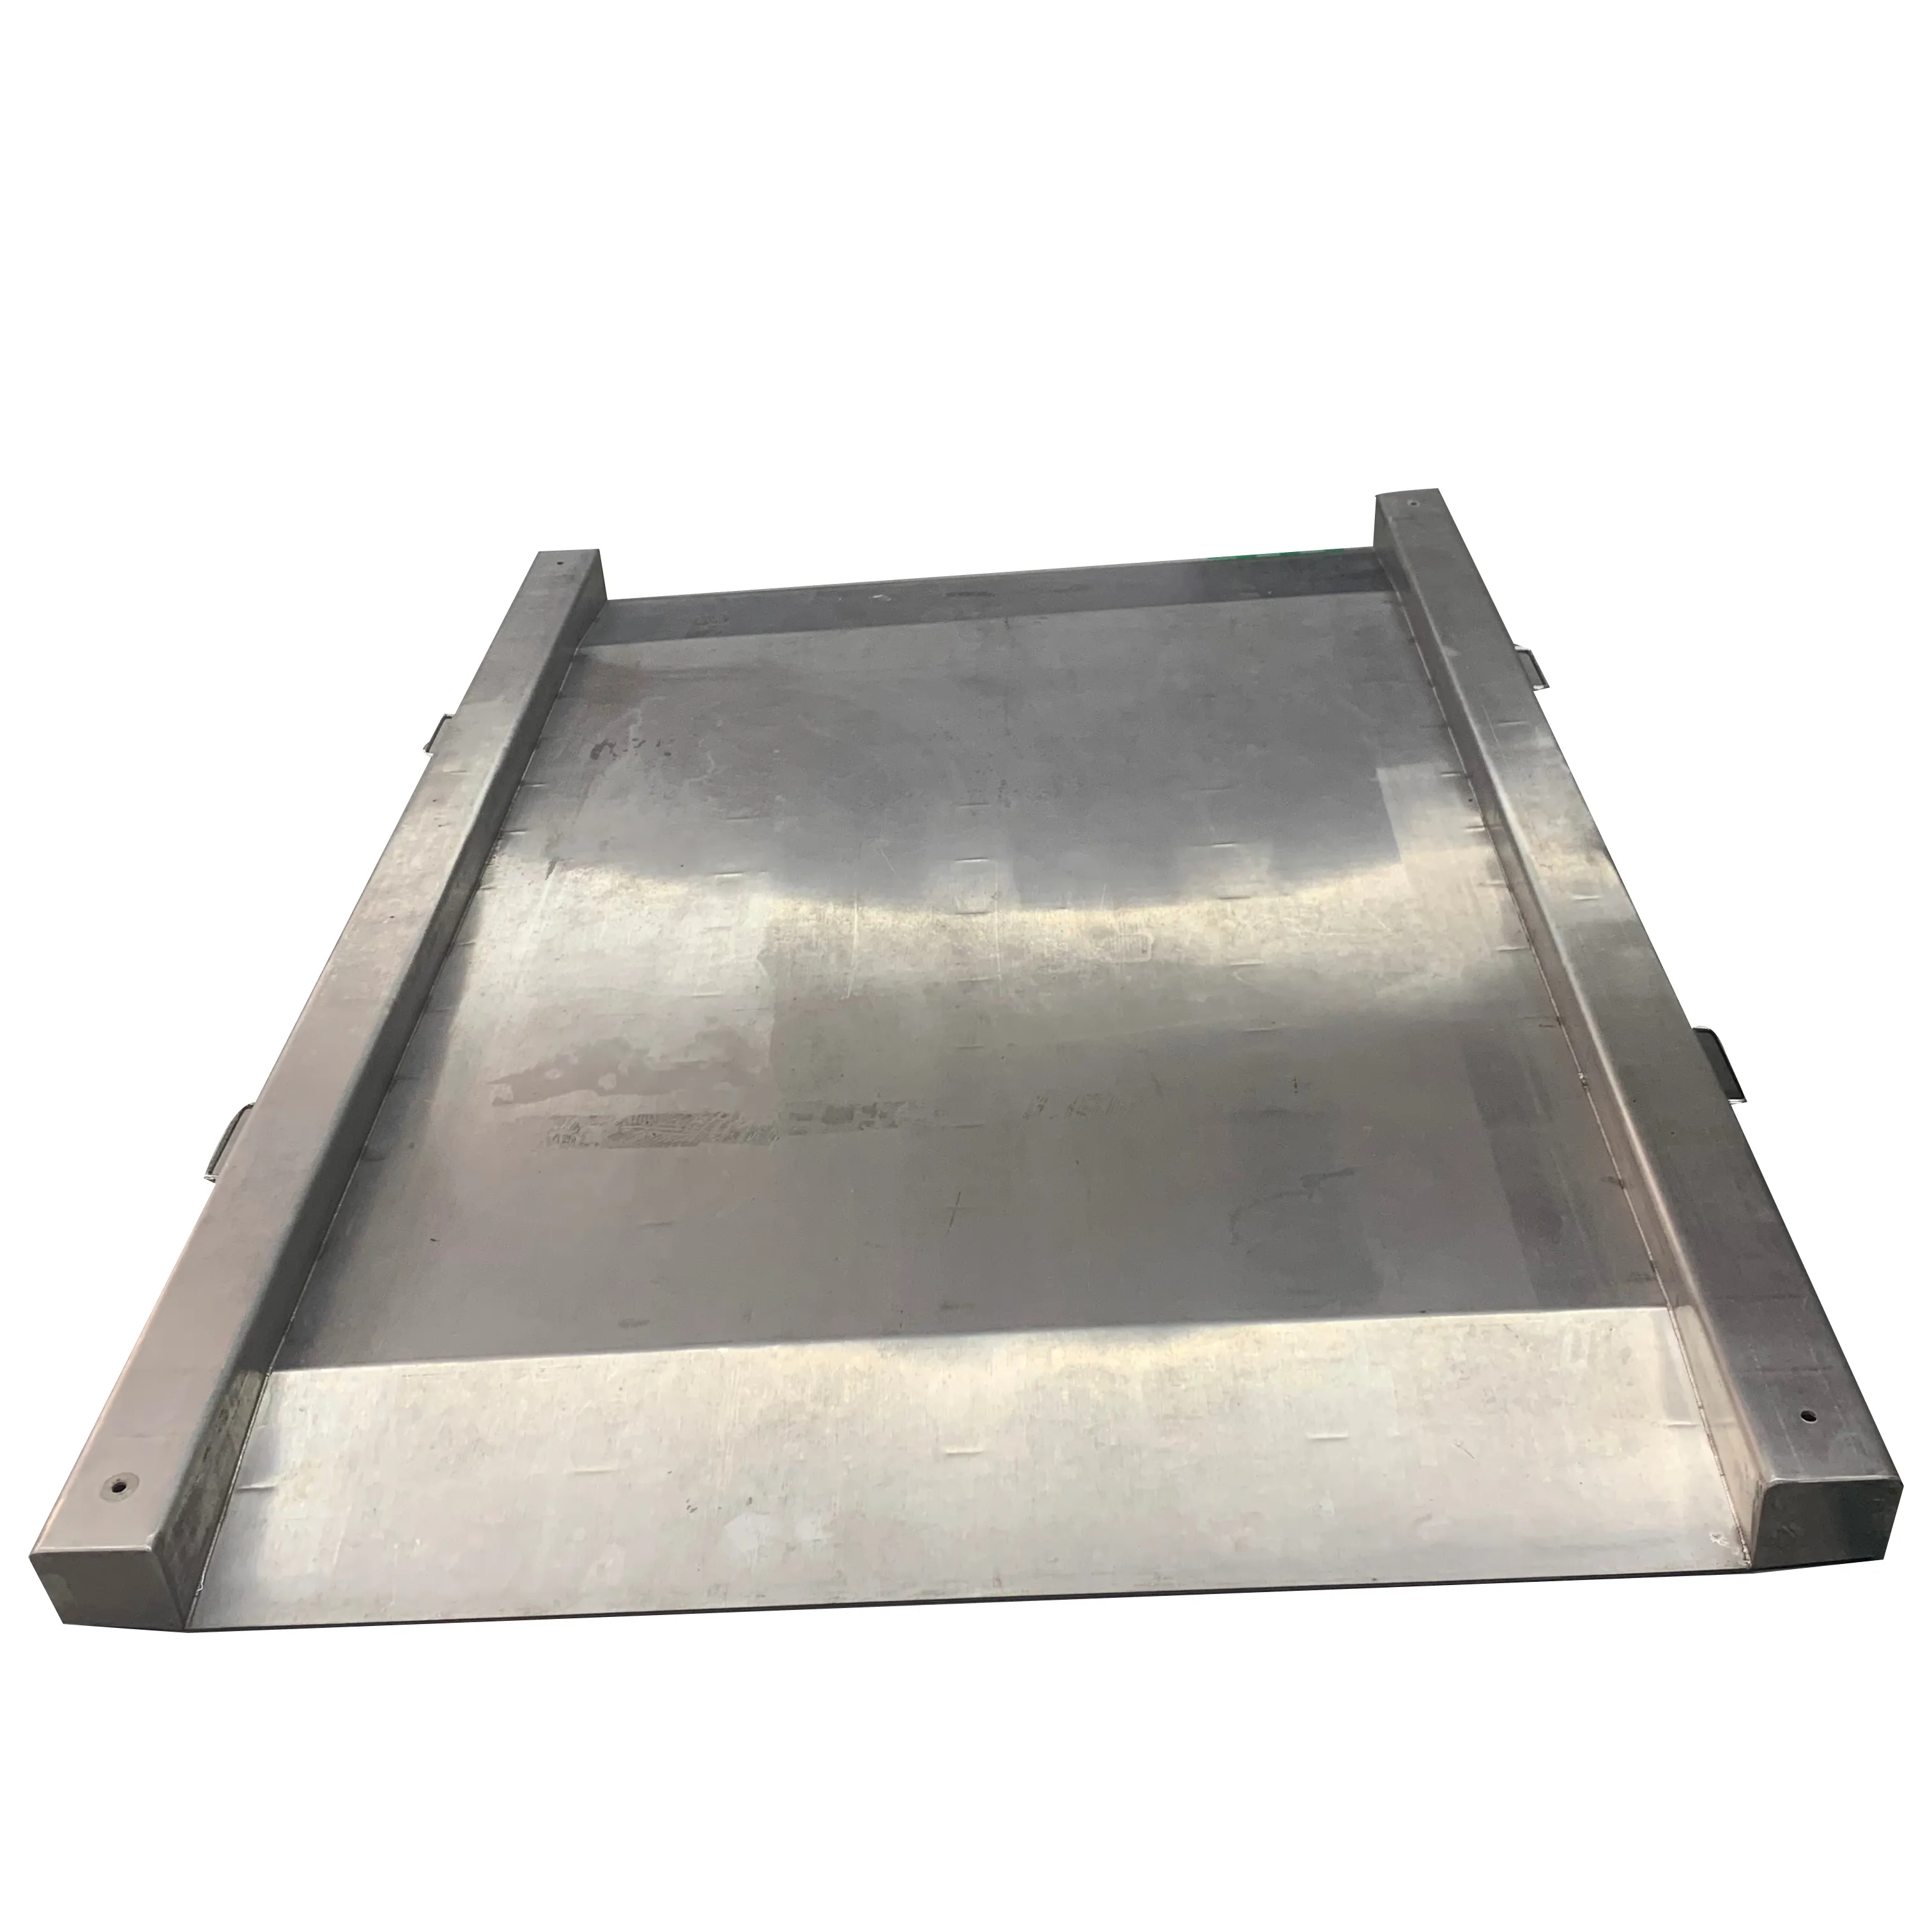 Puente de pesaje electrónico plegable de acero inoxidable báscula resistente fácil de limpiar plantas químicas de alimentos puente de pesaje